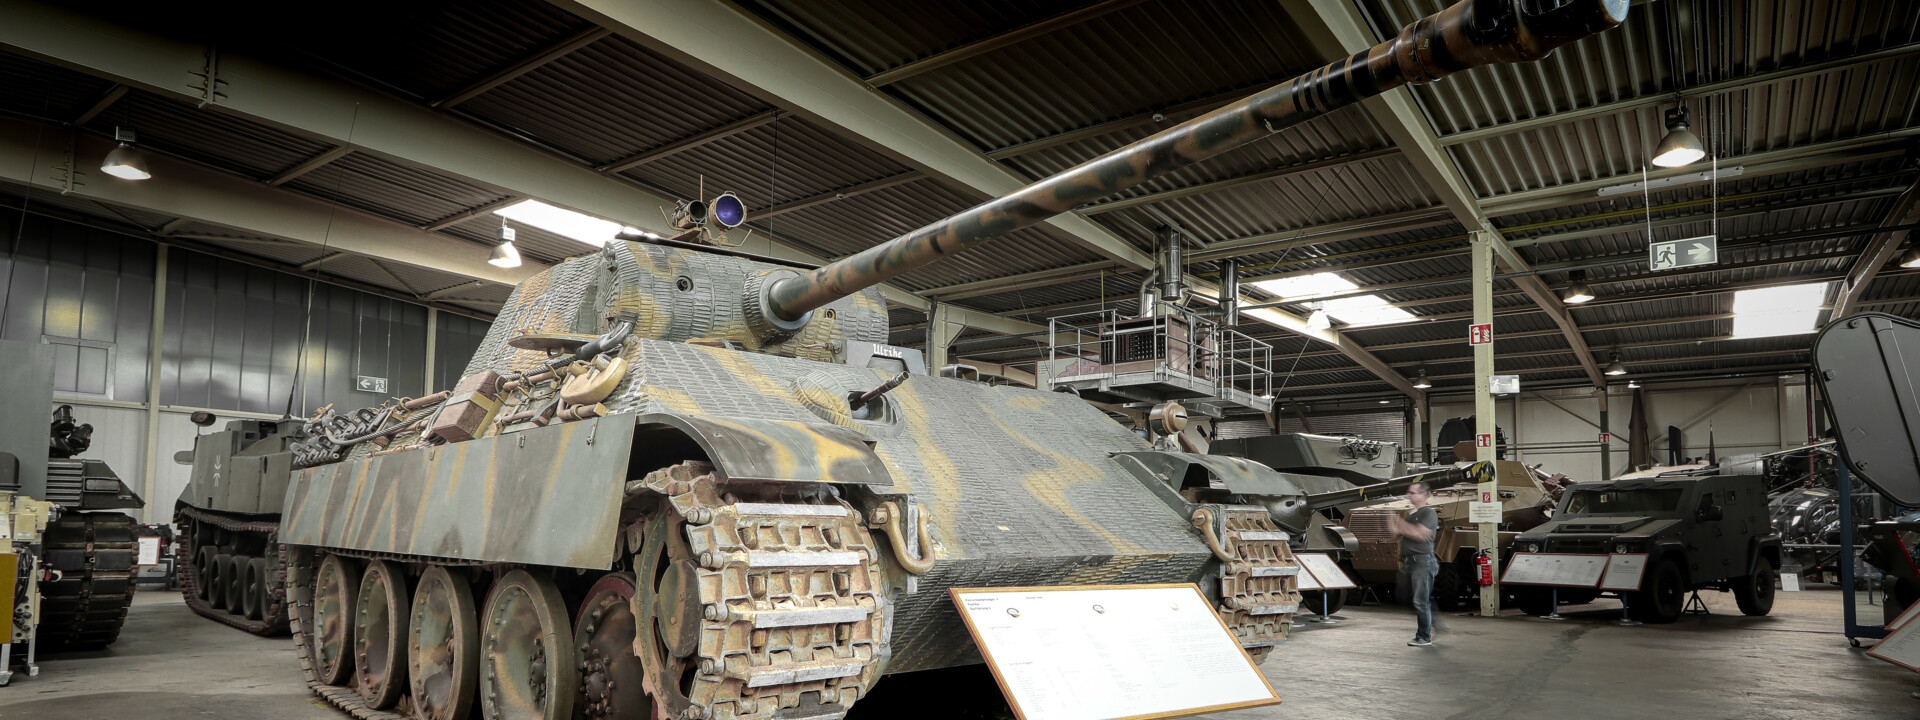 Panzer V Panther in der Wehrtechnischen Studiensammlung  ©Koblenz-Touristik GmbH, Johannes Bruchhof 